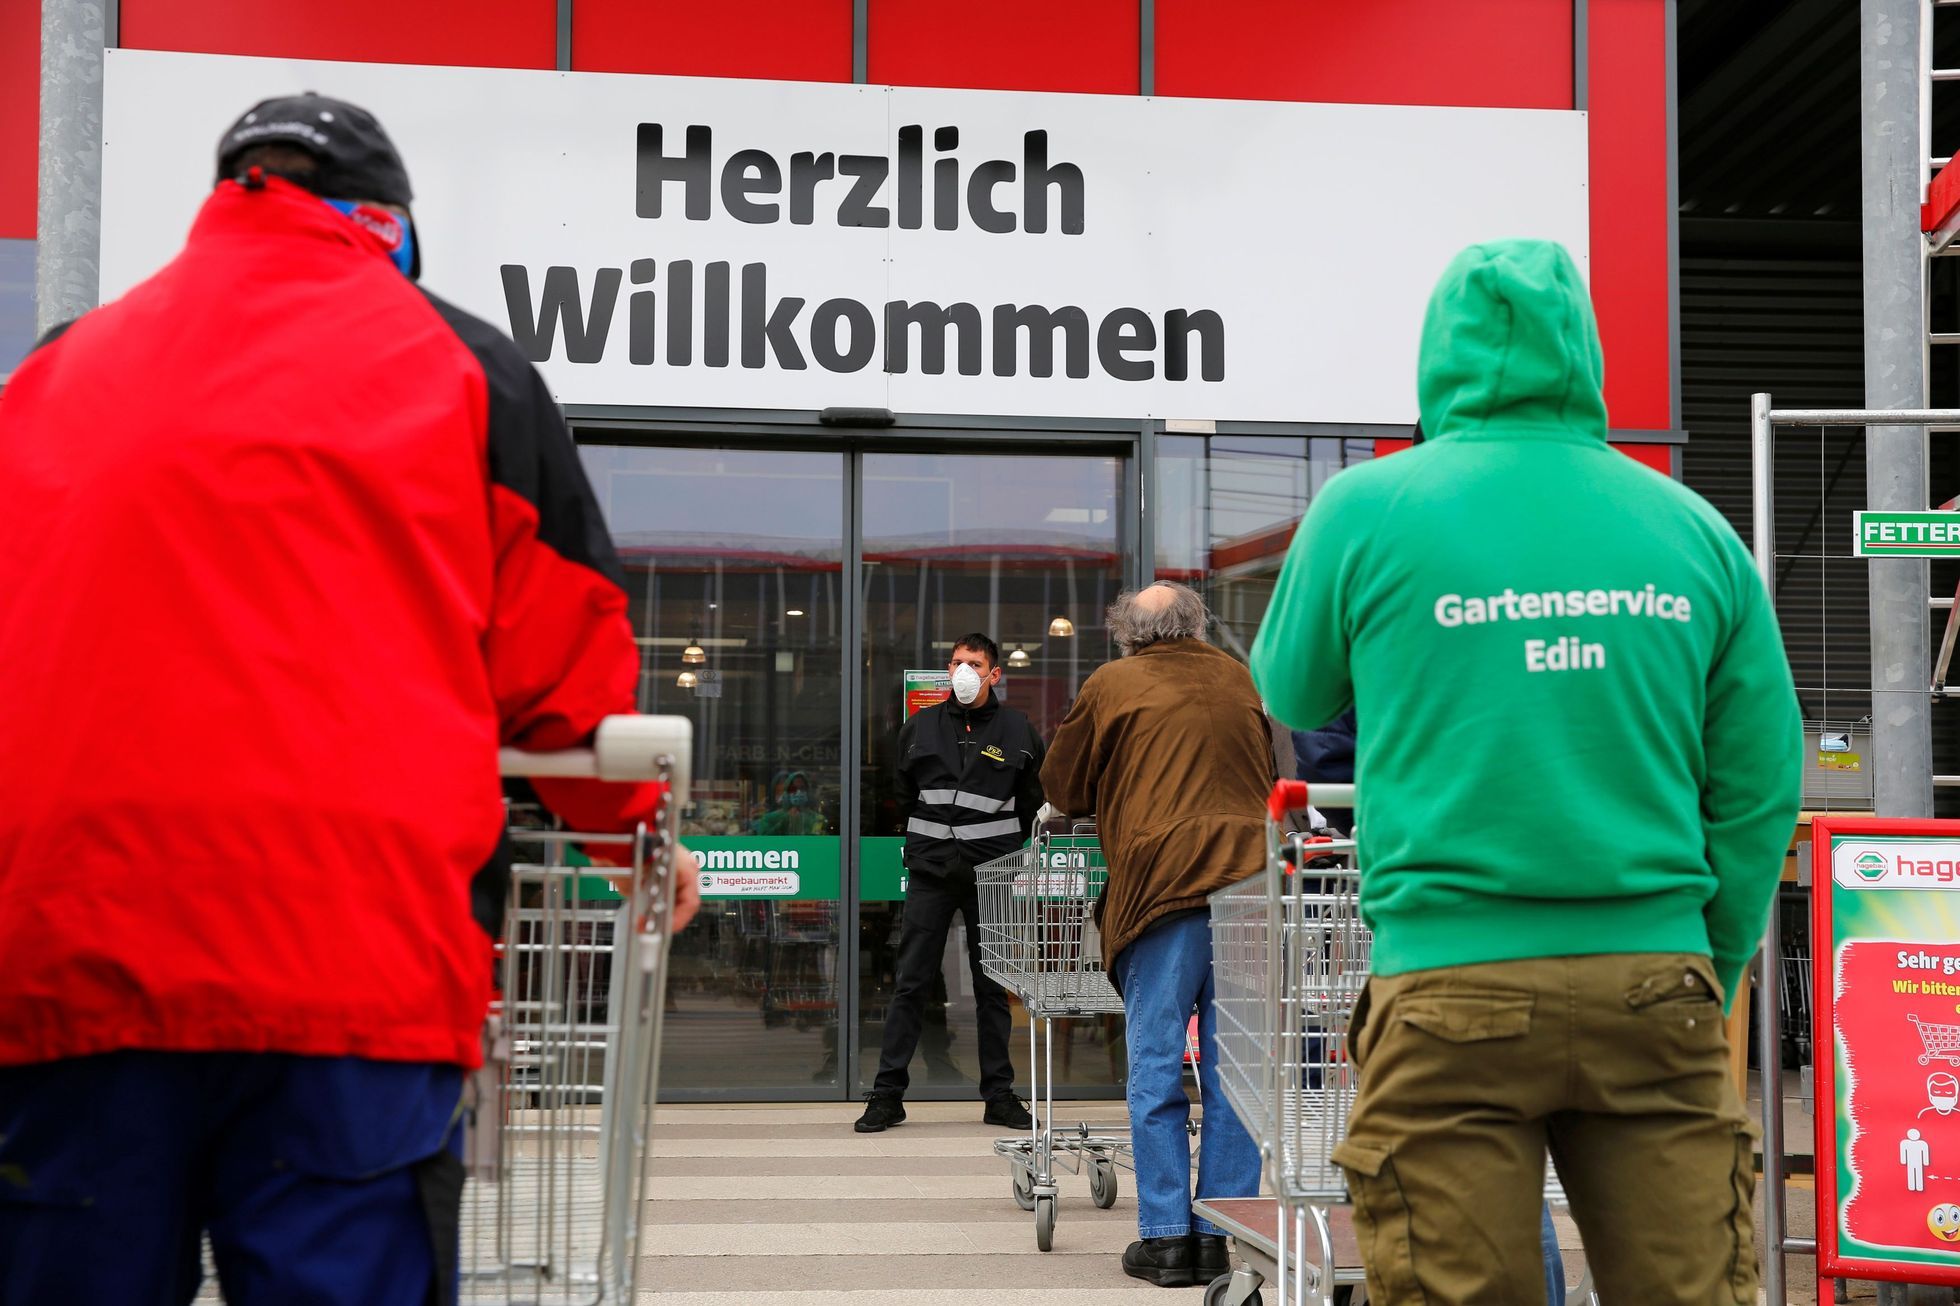 Auch in Österreich wird nach den Schuldigen für teure Lebensmittel gesucht, die Preise sind laut dem Minister nicht nachvollziehbar